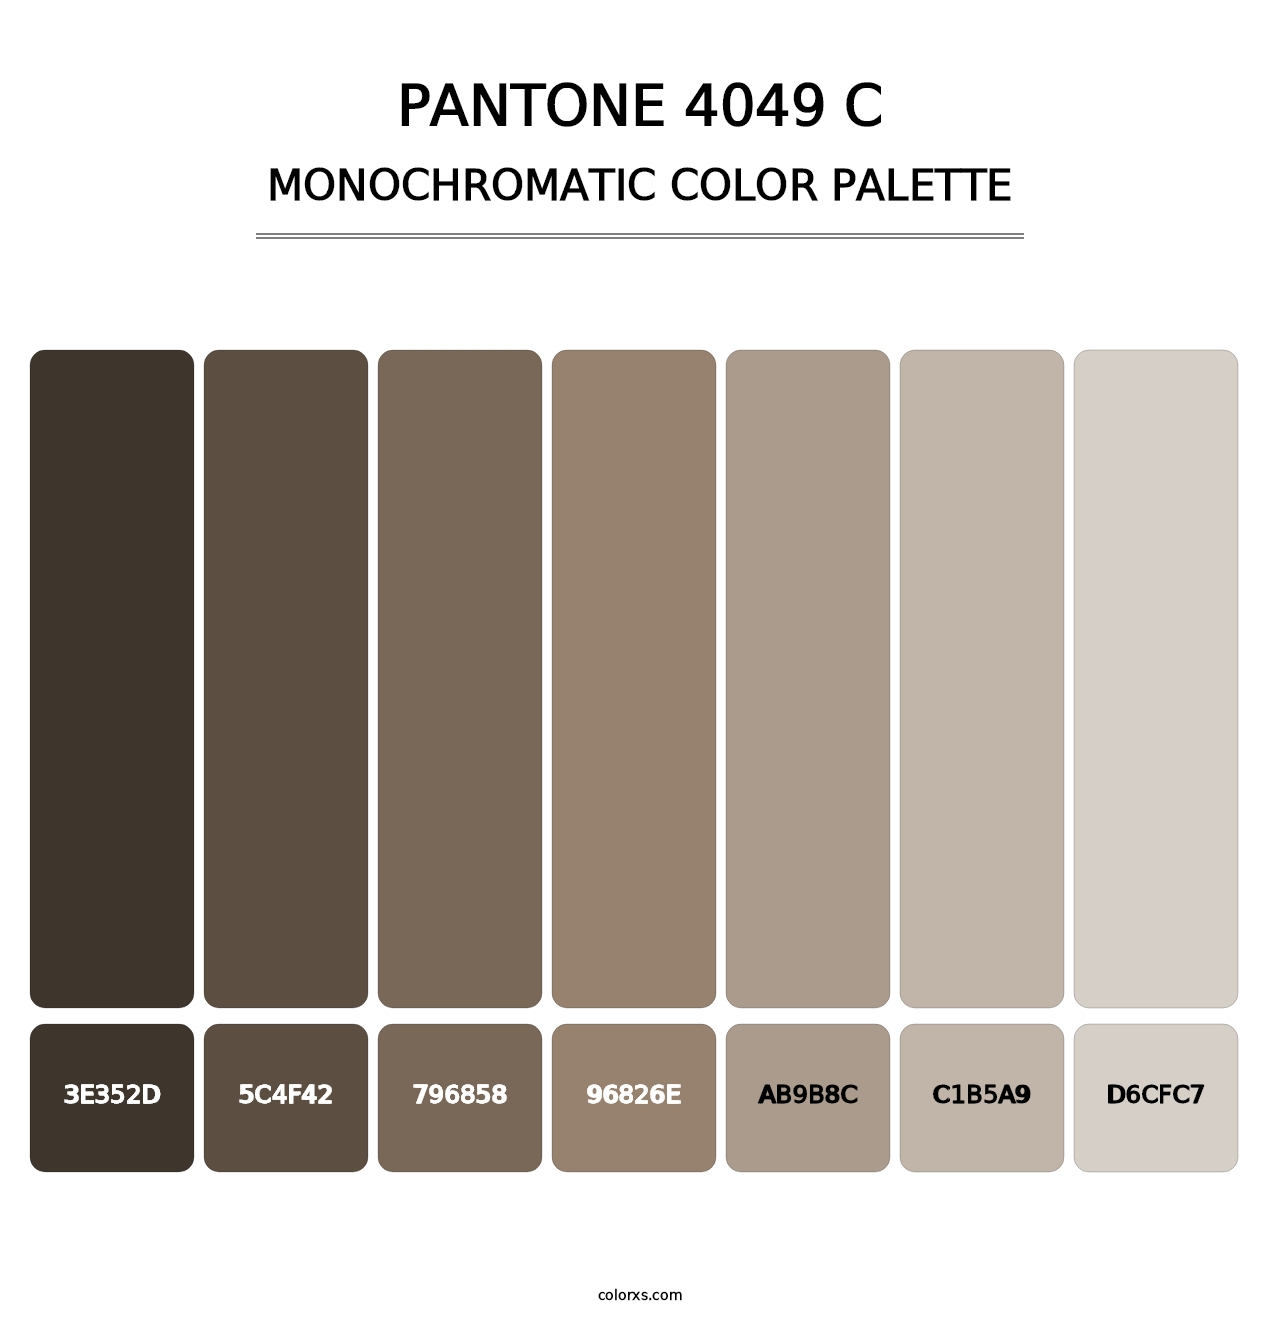 PANTONE 4049 C - Monochromatic Color Palette